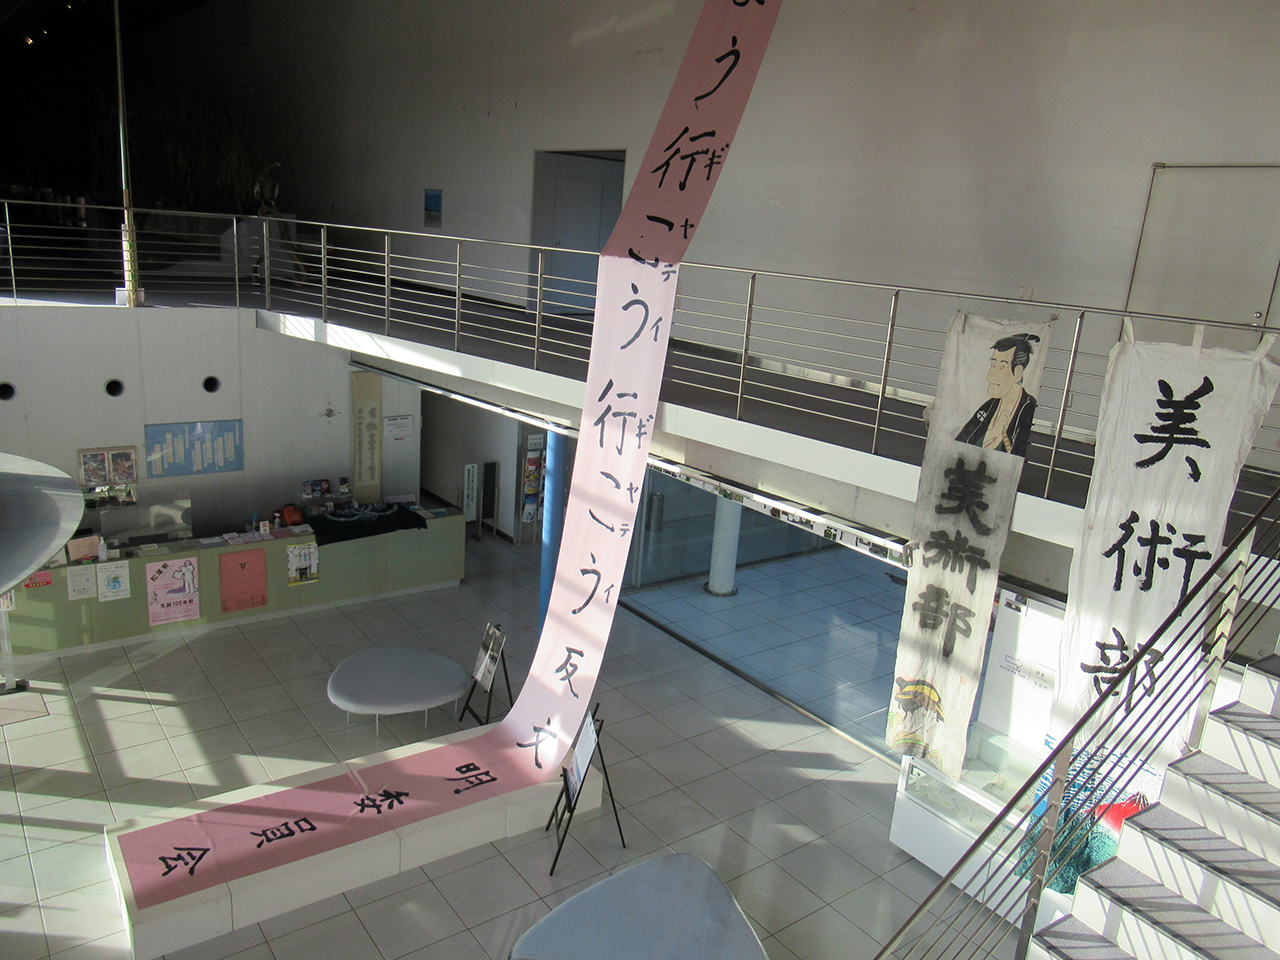 諏訪湖博物館・赤彦記念館のエントランスから諏訪湖に向かって掲げられた松澤の「消滅の幟」と諏訪清陵高校美術部の幟